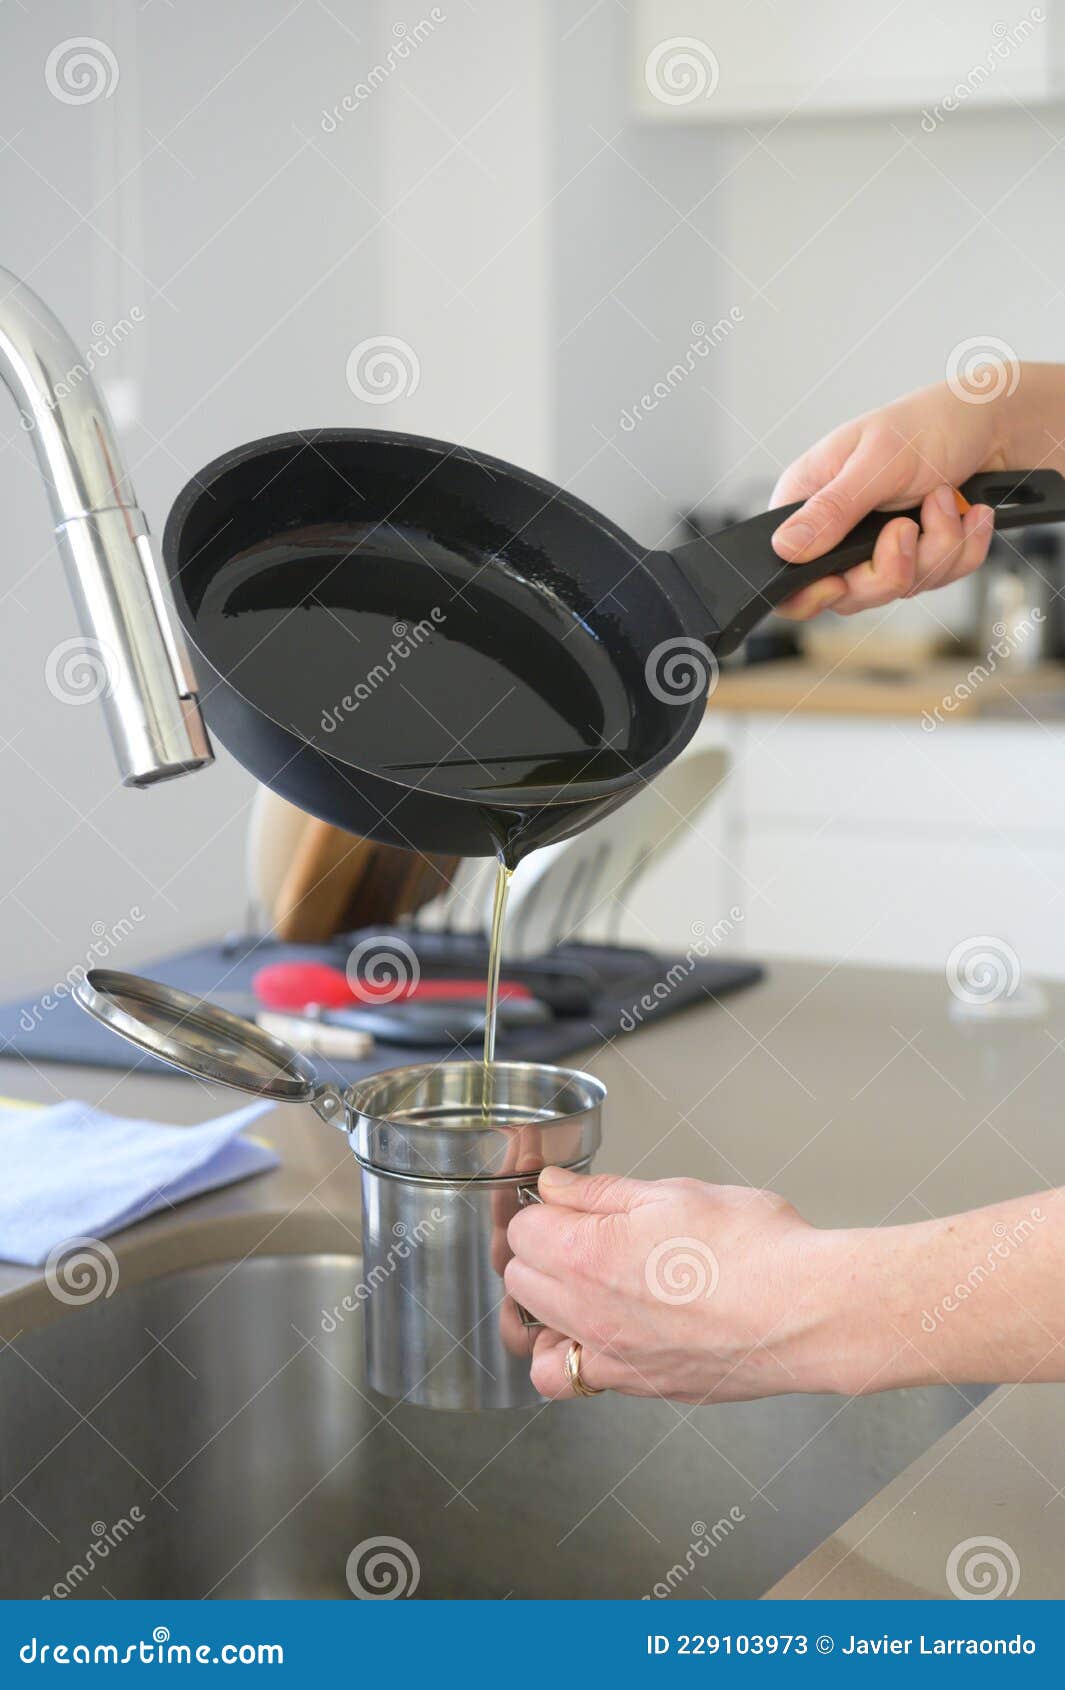 Mujer Vertiendo Aceite De Cocina Usado De Una Vieja Sartén En Un Recipiente  De Cocina De Metal En Su Cocina Imagen de archivo - Imagen de fritura,  suciedad: 229103973